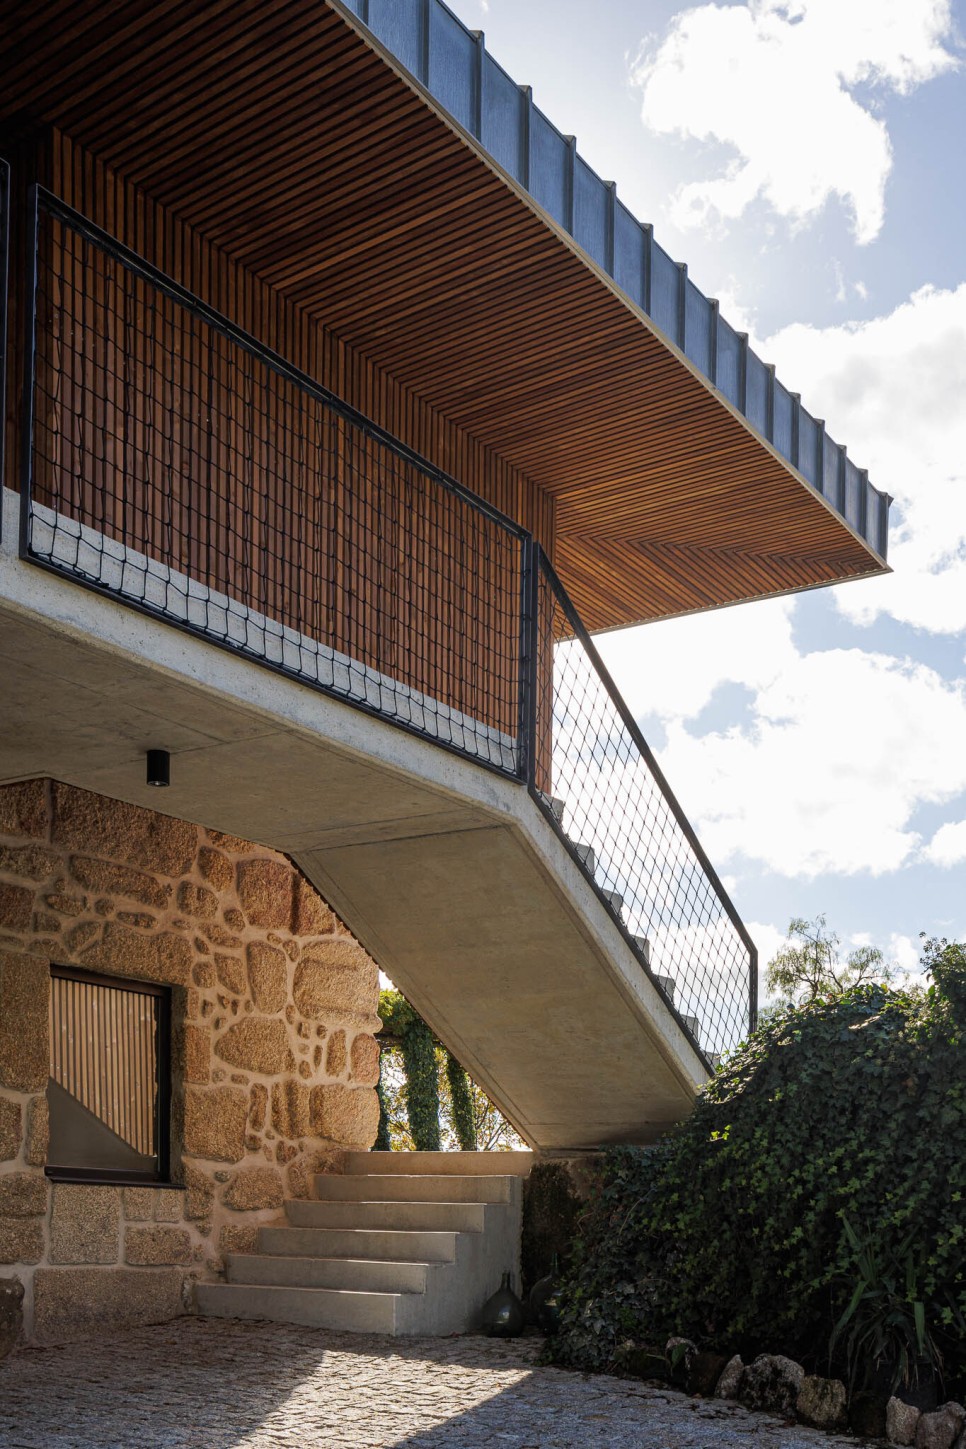 기존의 석조 건물 구조를 살린 여행자용 숙소, The Vagar Country House by David Bilo + Filipe Pina